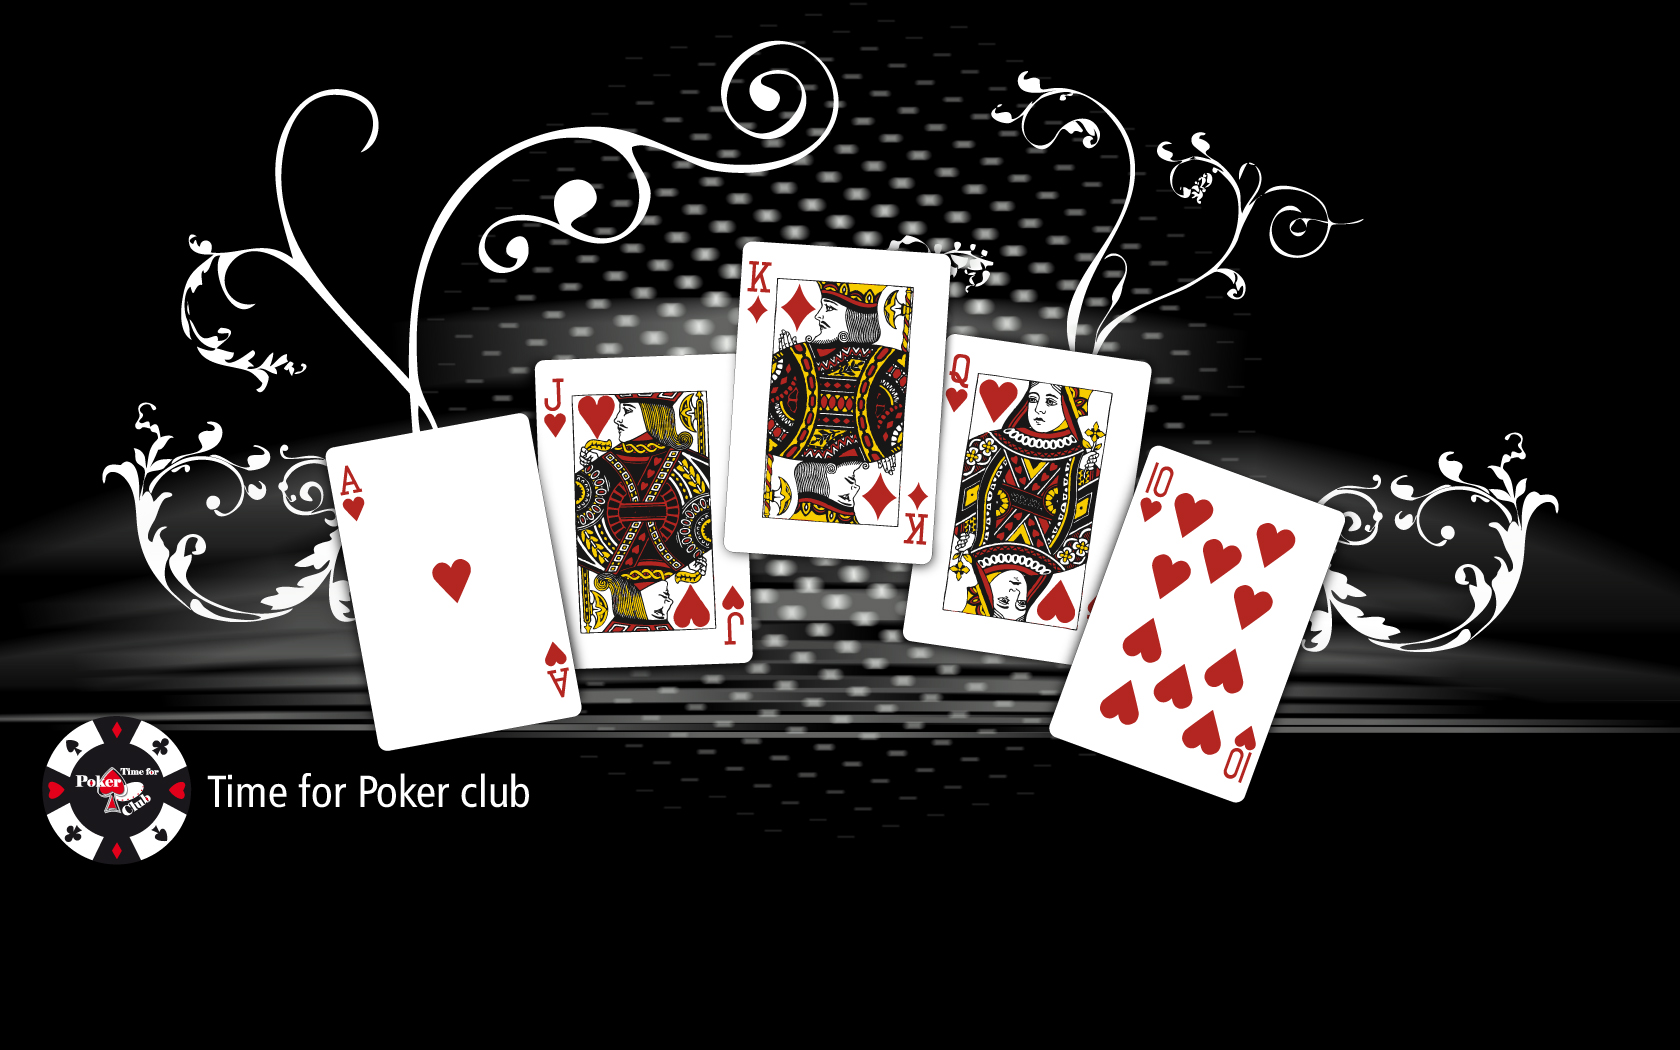 ポーカーカードの壁紙,ゲーム,ポーカー,ギャンブル,トランプゲーム,グラフィックデザイン